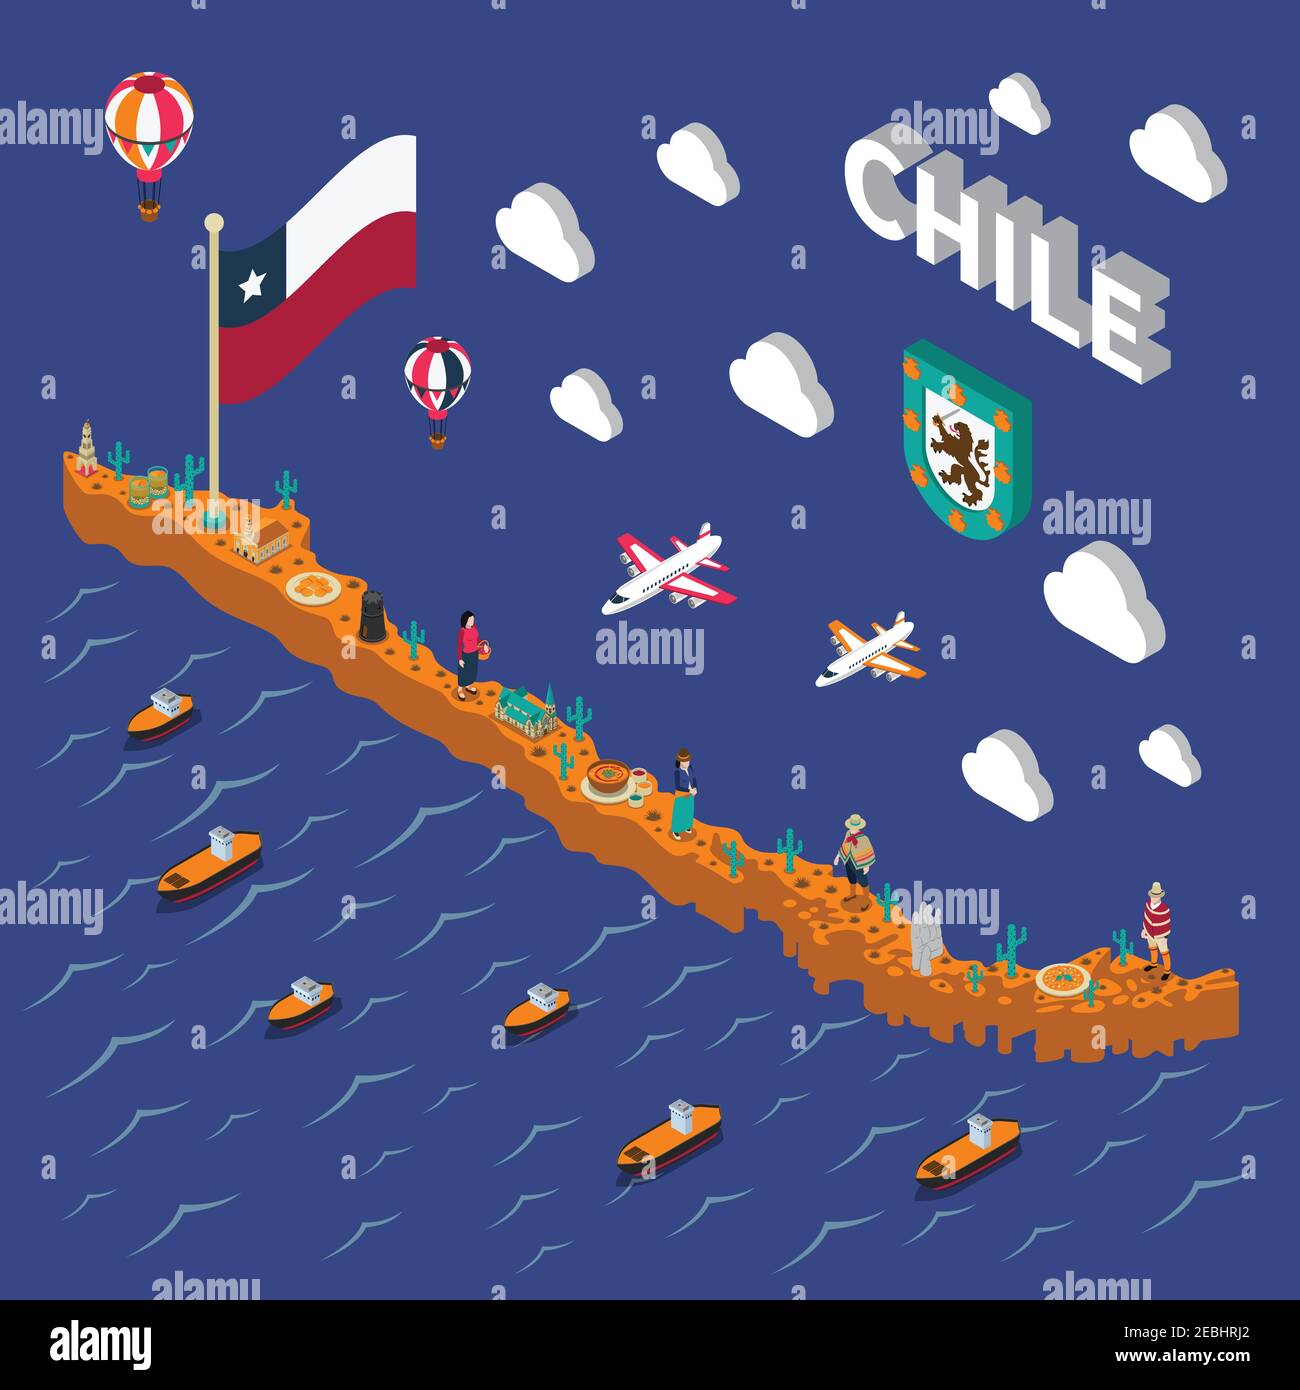 Les attractions touristiques chiliennes symboles carte isométrique avec drapeau national de nourriture et l'illustration du vecteur de l'affiche des lieux d'intérêt Illustration de Vecteur